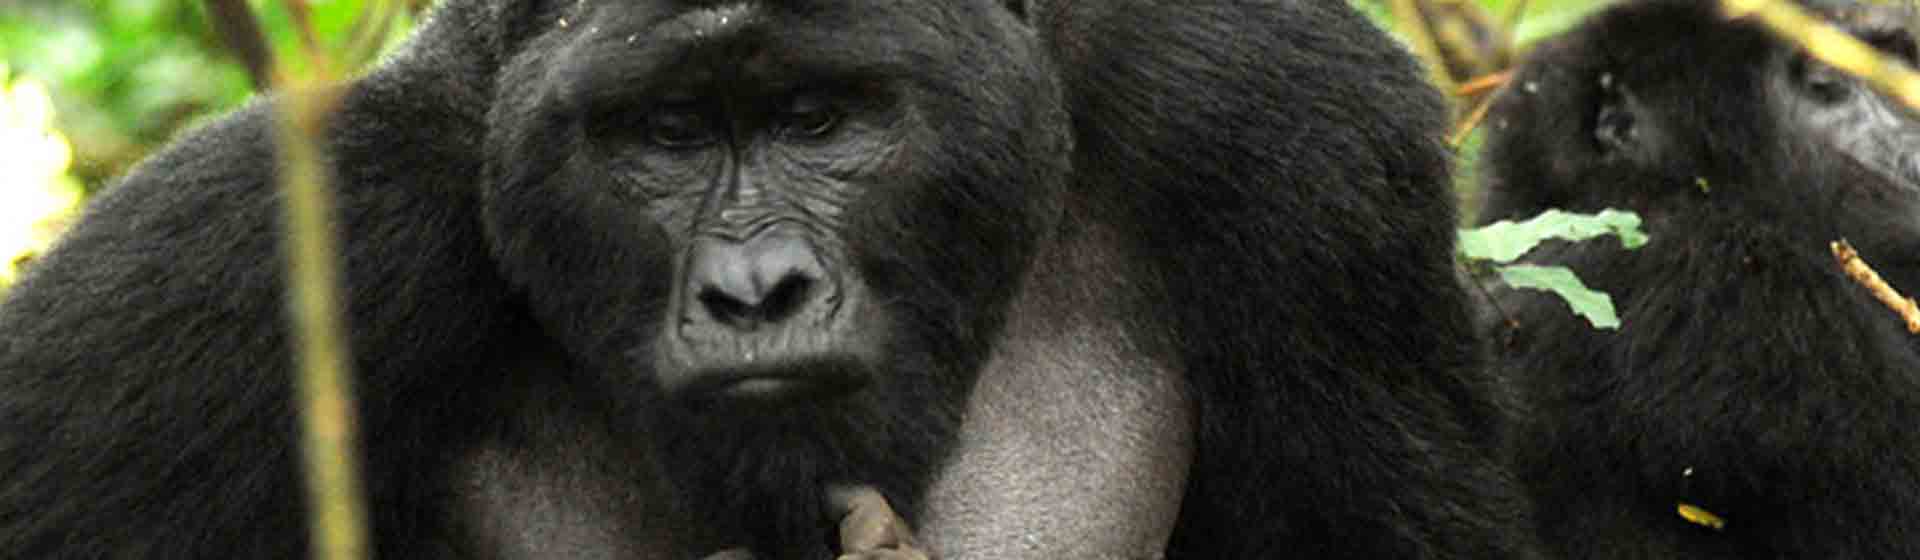 East Africa wildlife safari |Rwanda Gorilla Trekking safari